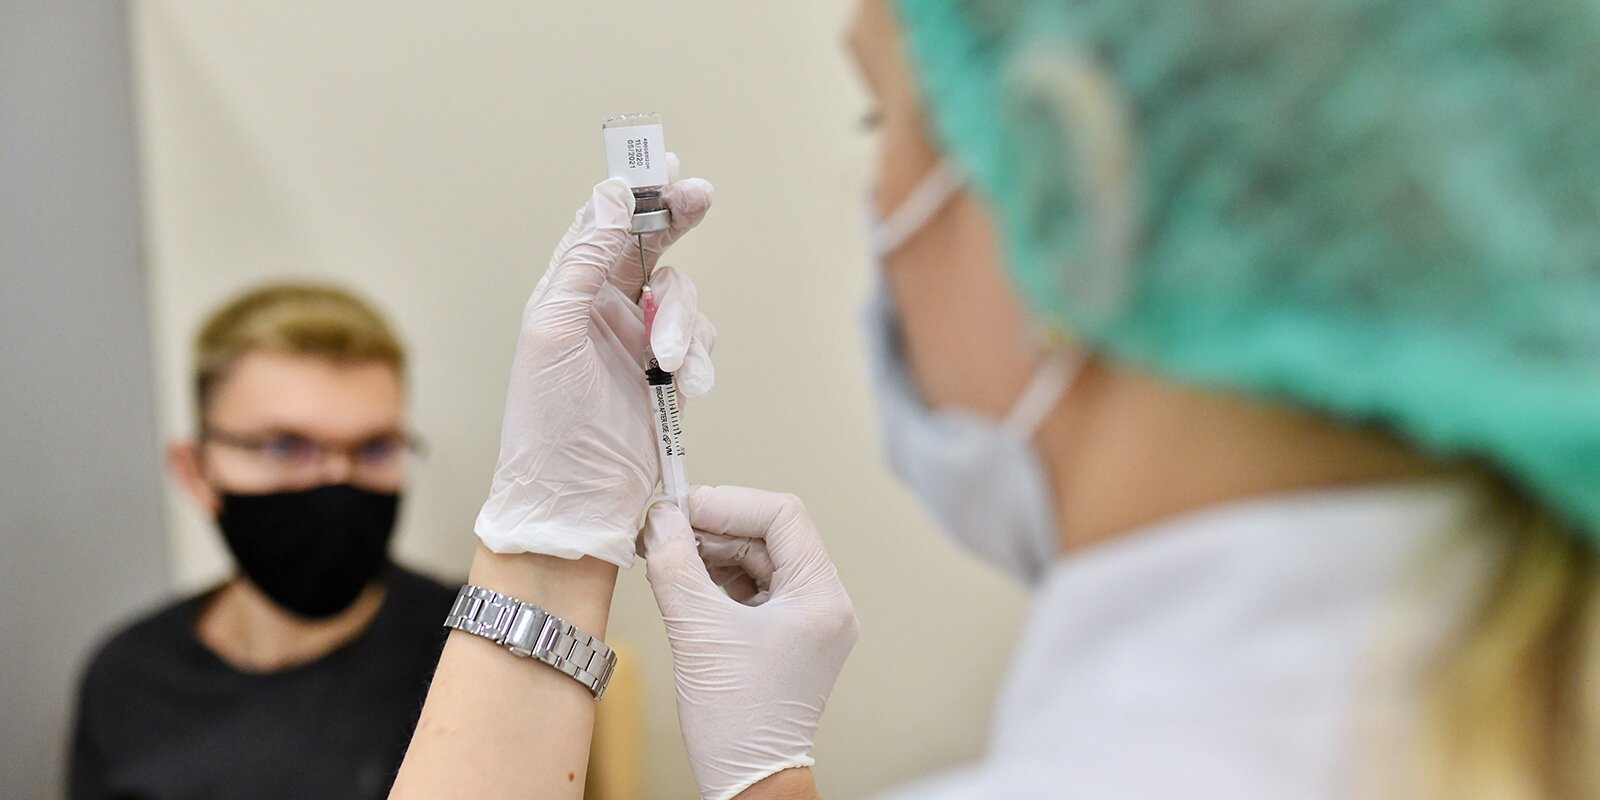 вакцинация от коронавируса в москве фото